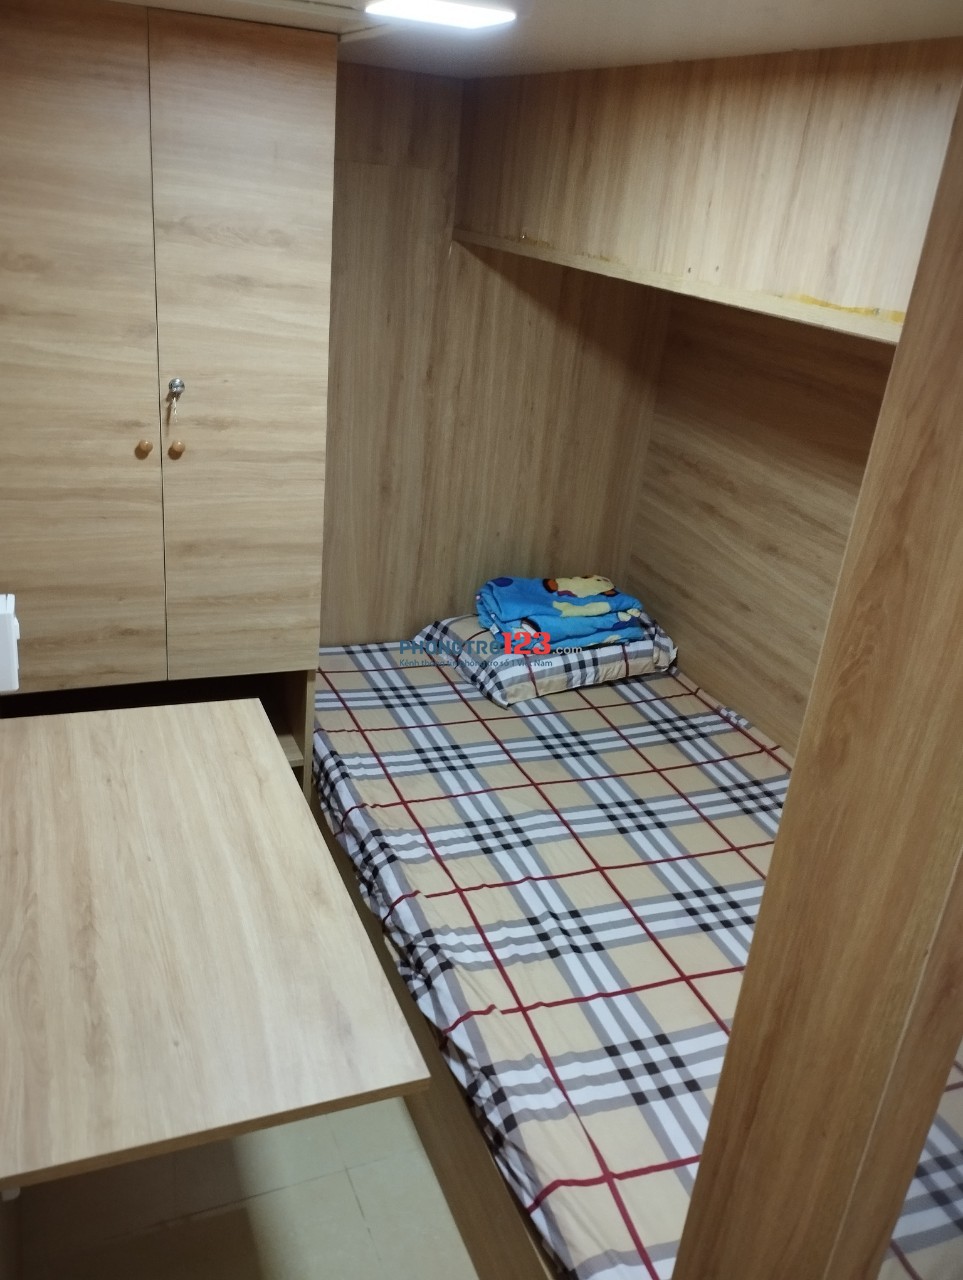 Sleep Box Cao Cấp: Phòng Cho 4 Người - 1.9 triệu/tháng tại Trần Não, TP Thủ Đức